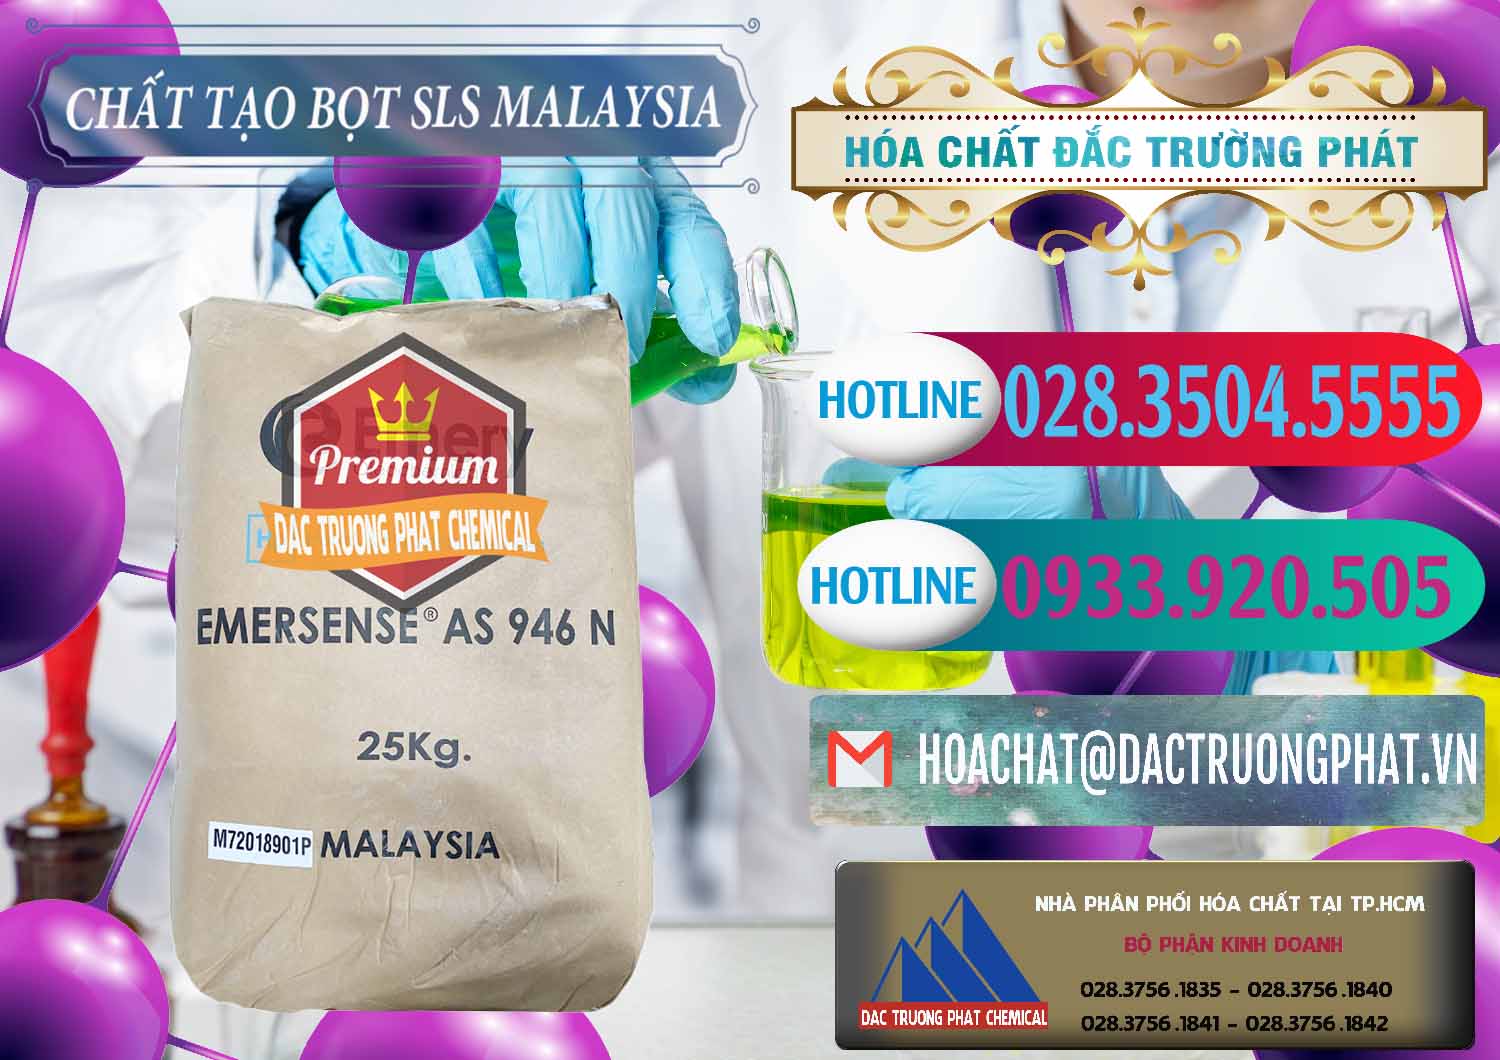 Cty chuyên phân phối - bán Chất Tạo Bọt SLS Emery - Emersense AS 946N Mã Lai Malaysia - 0423 - Đơn vị chuyên bán _ cung cấp hóa chất tại TP.HCM - truongphat.vn